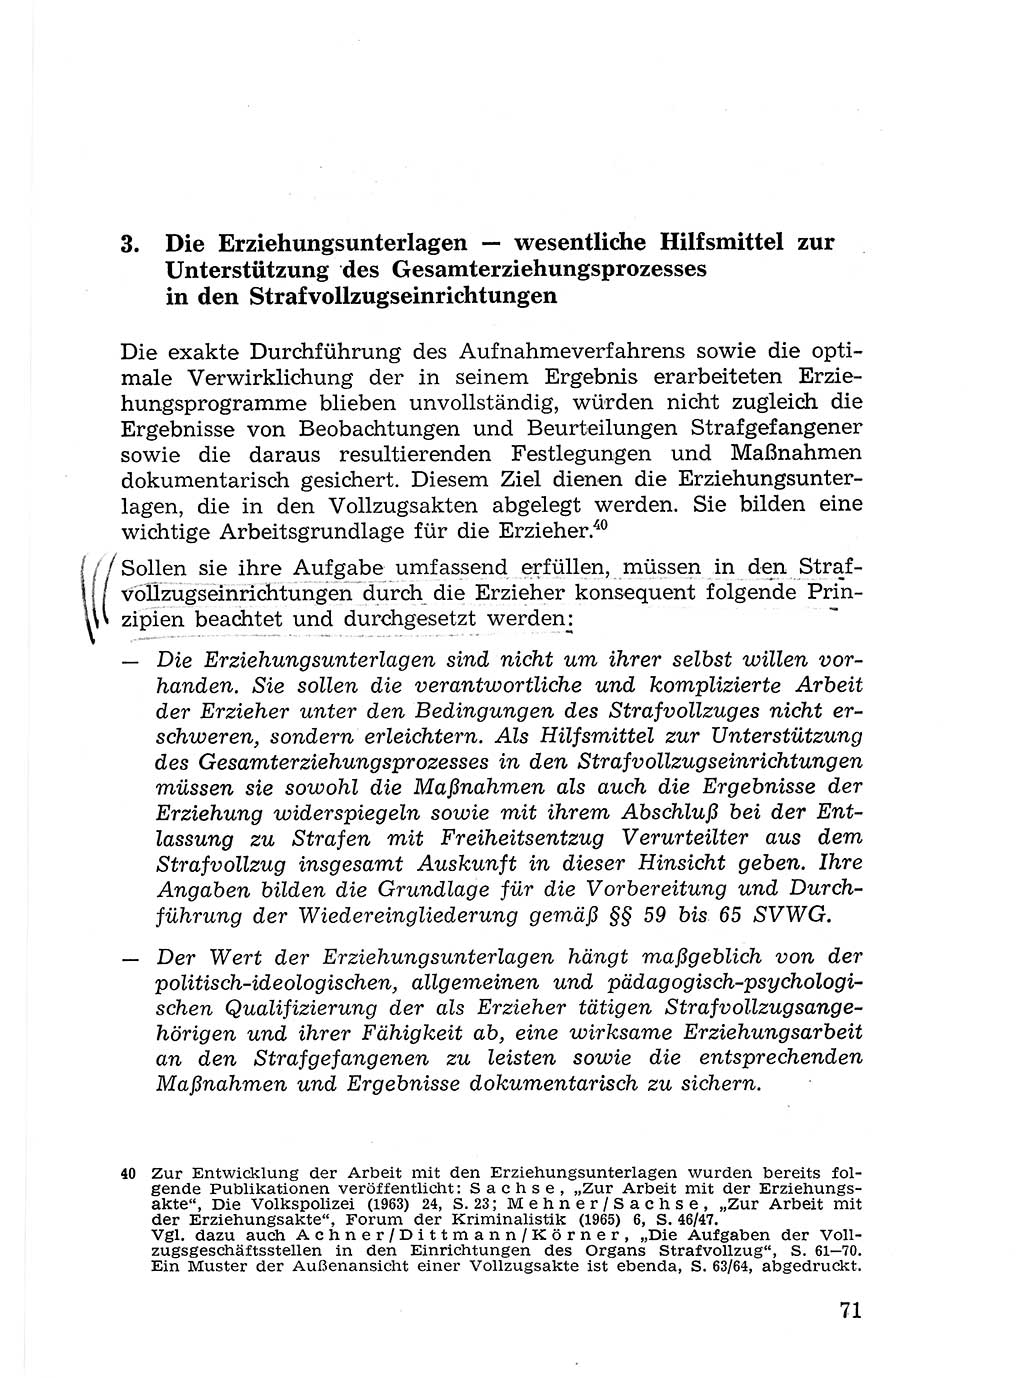 Sozialistischer Strafvollzug (SV) [Deutsche Demokratische Republik (DDR)] 1972, Seite 71 (Soz. SV DDR 1972, S. 71)